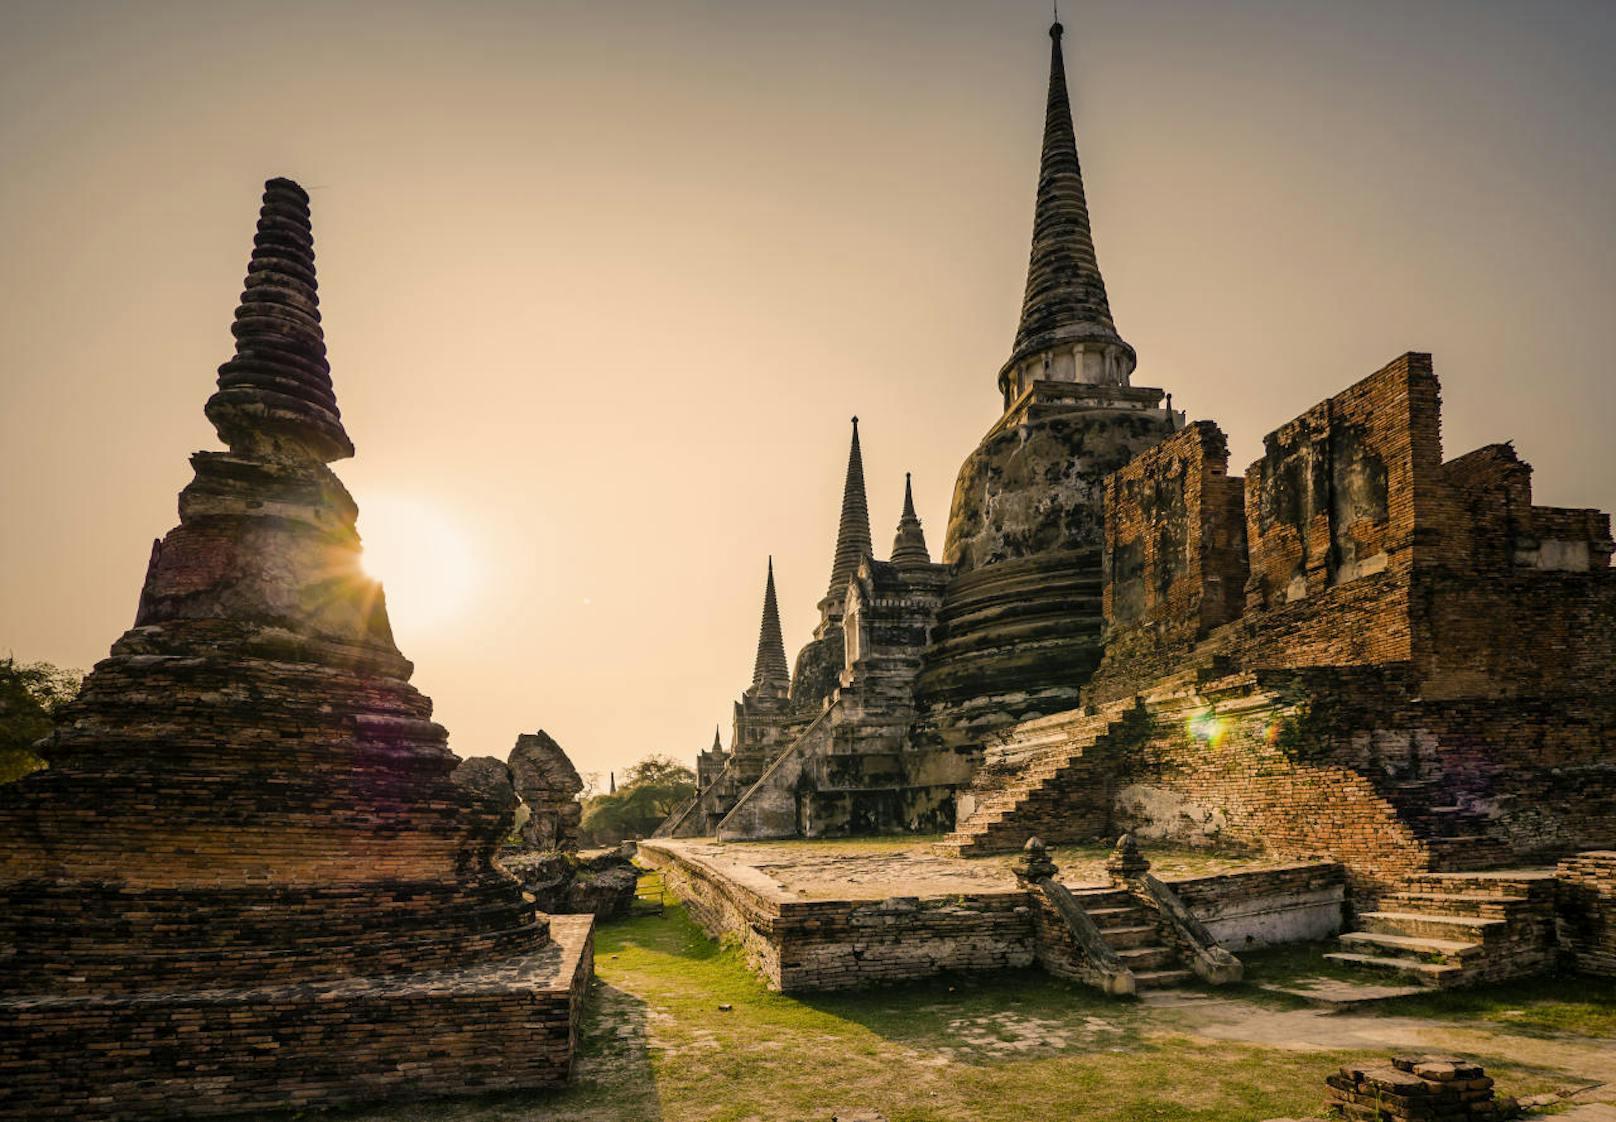 Wat Phra Si Sanphet, ein Teil von tAyutthayas histoischem Park.
ursprünglich der heilgste Tempel der Stadt vor seiner Zerstörung